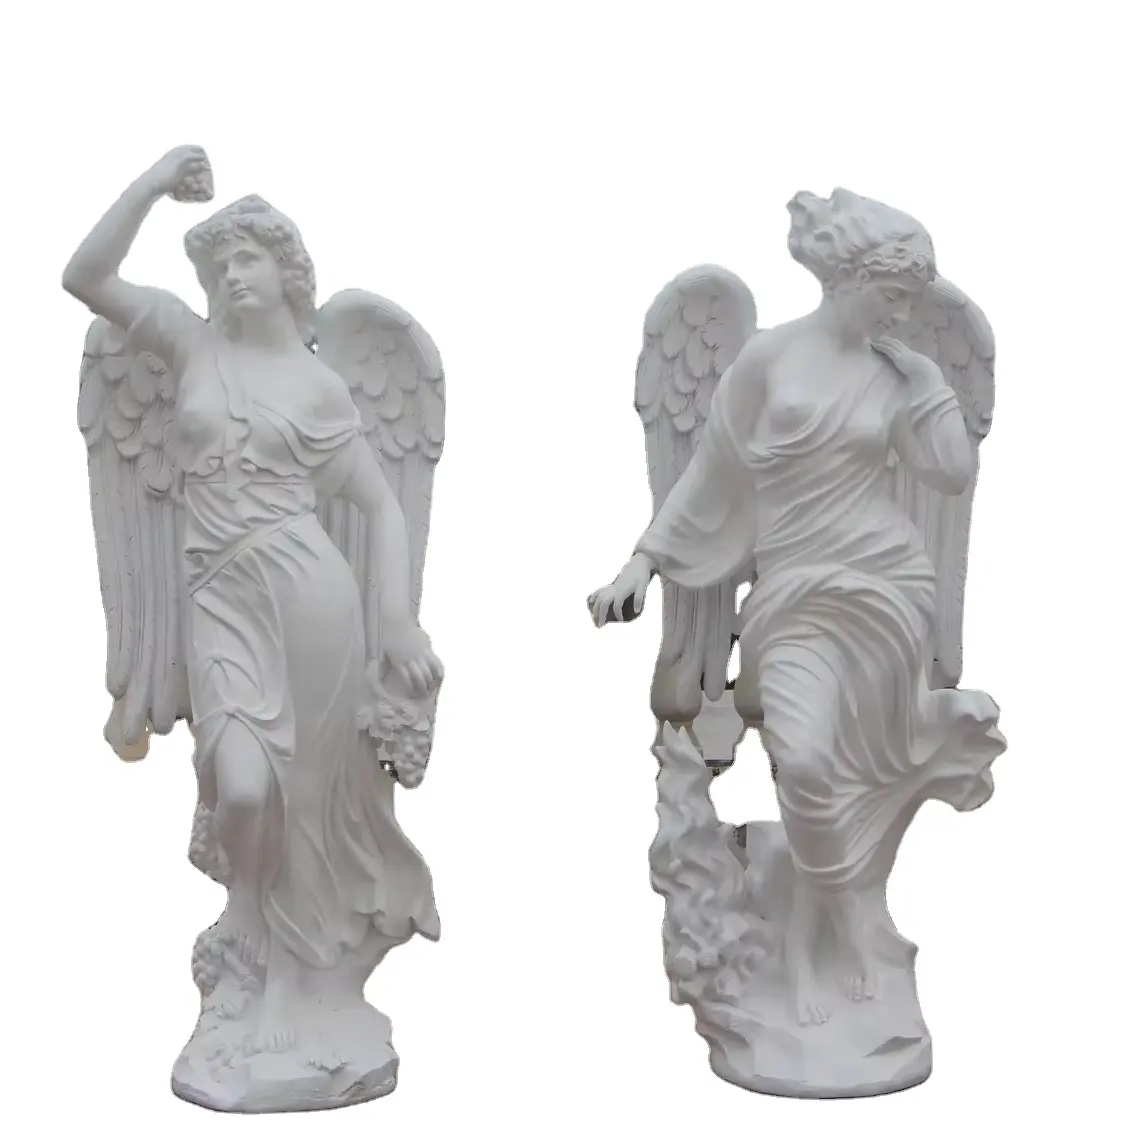 Marmo pietra naturale dea statua di marmo signora statua di angelo scultura di pietra di marmo decorazione esterna